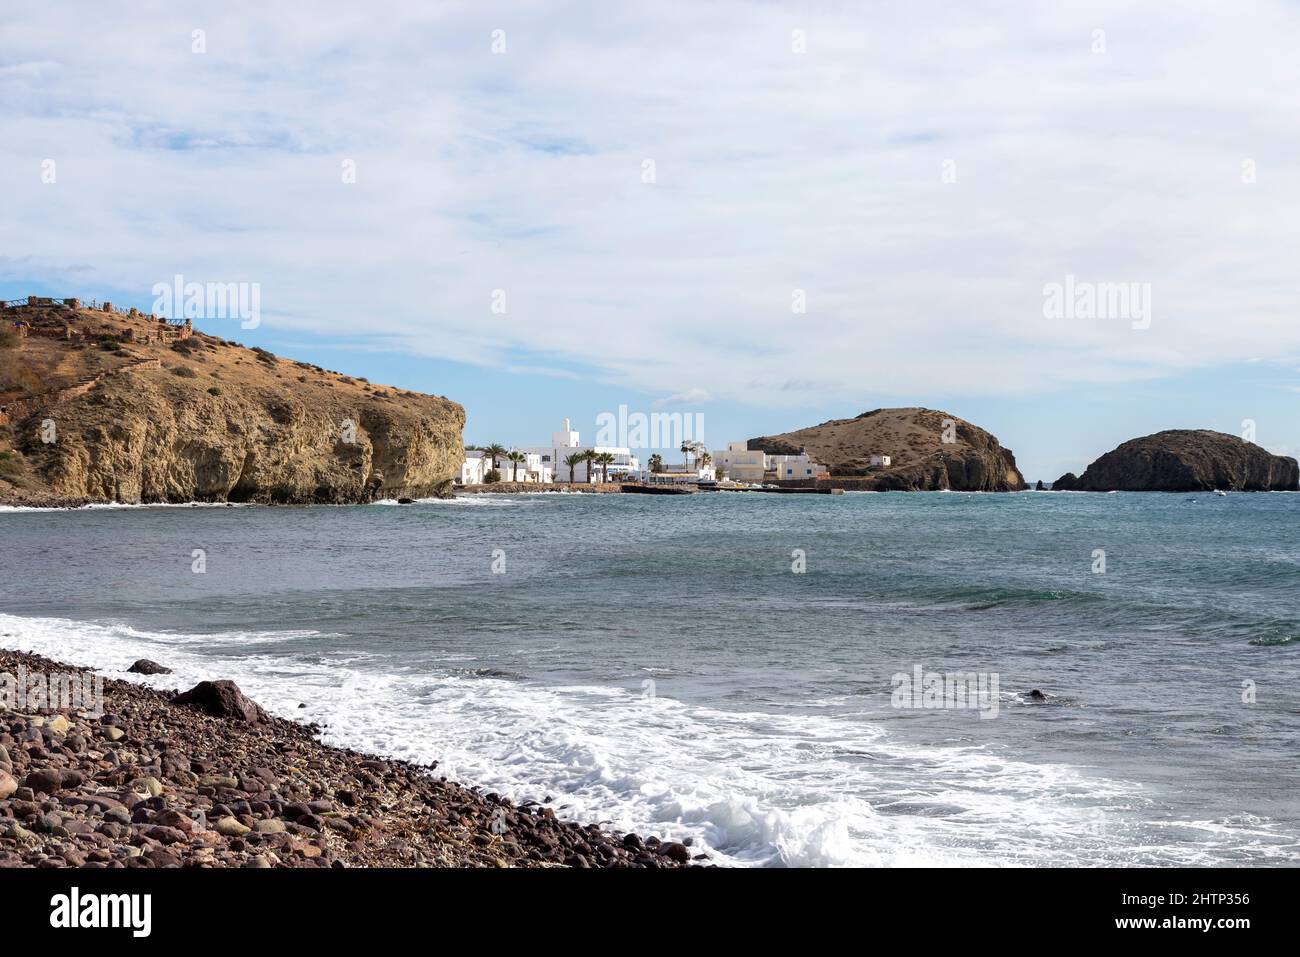 The pretty fishing village of Isleta del Moro, Almeria, Spain Stock Photo